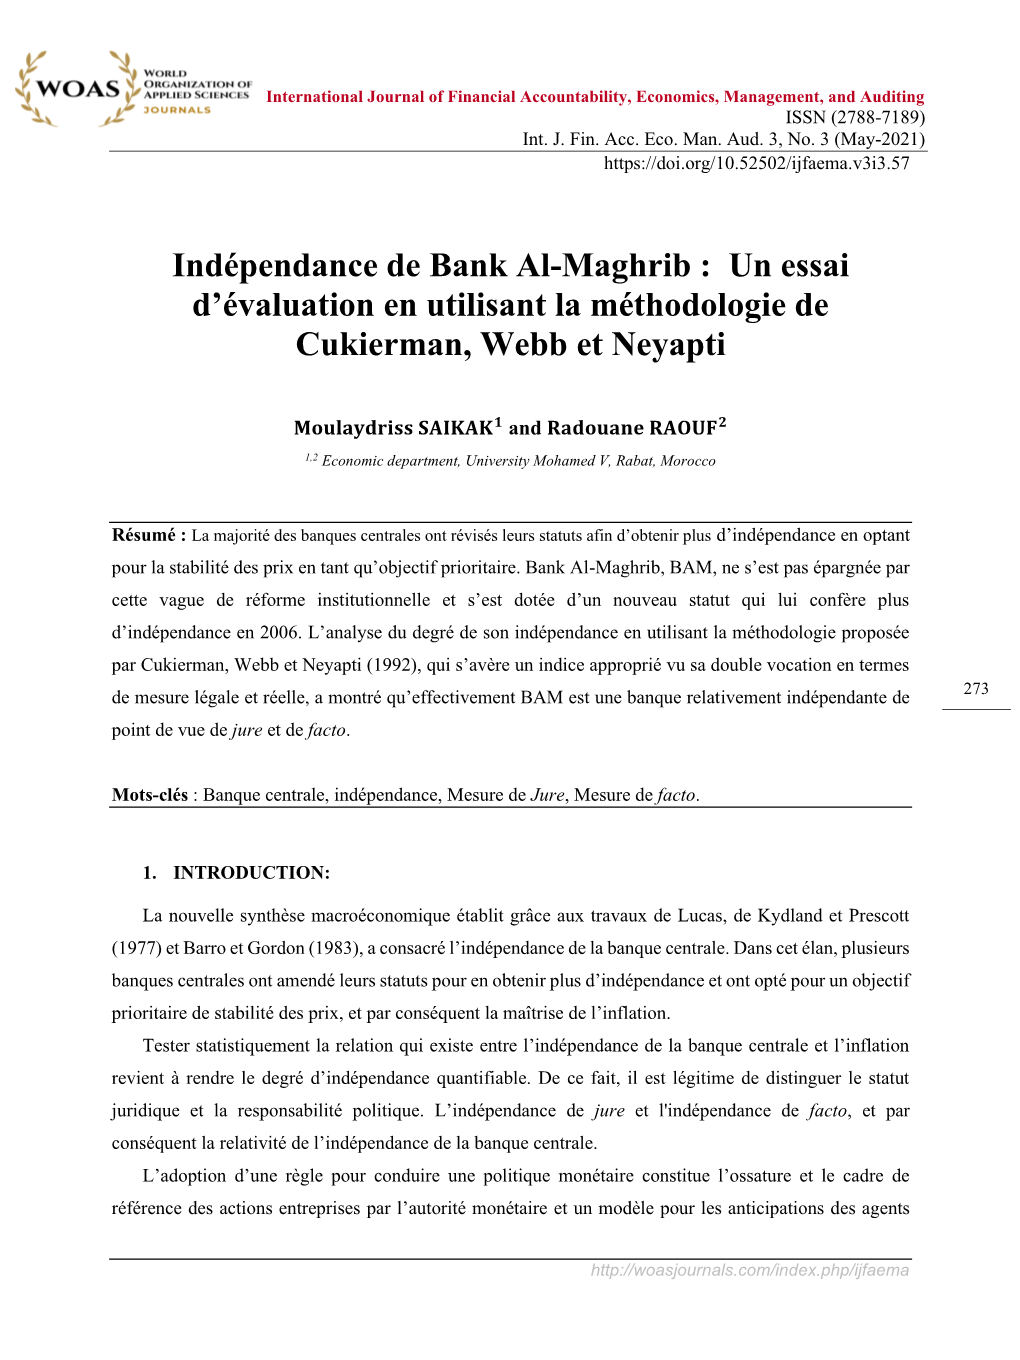 Indépendance De Bank Al-Maghrib : Un Essai D'évaluation En Utilisant La Méthodologie De Cukierman, Webb Et Neyapti